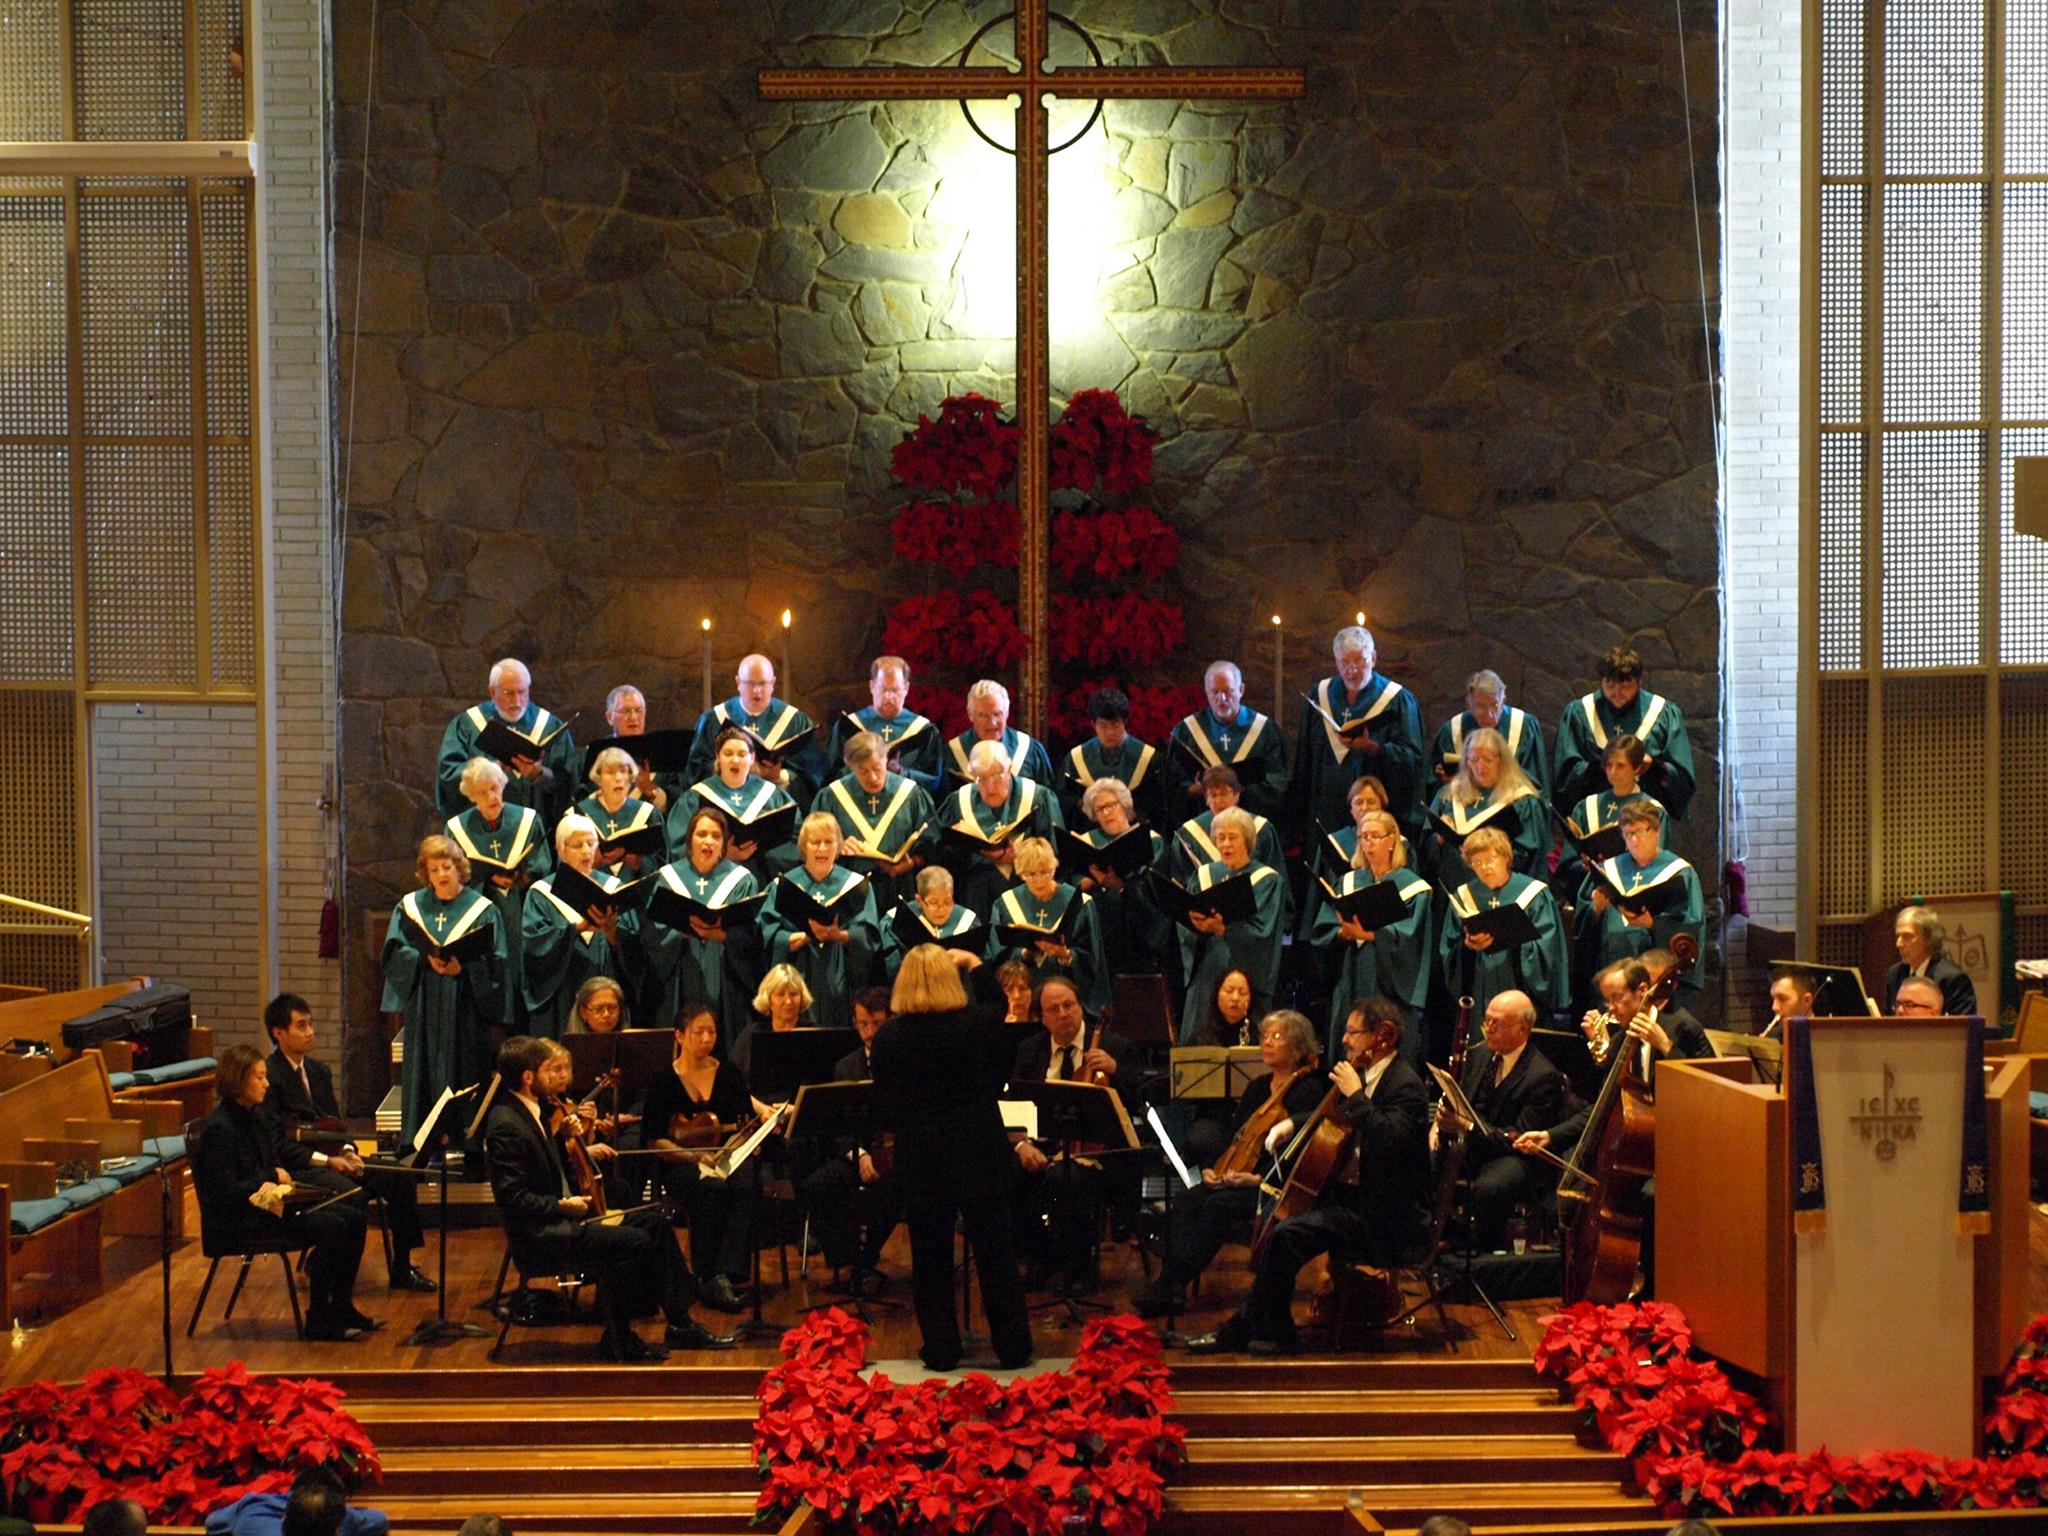   Choir  